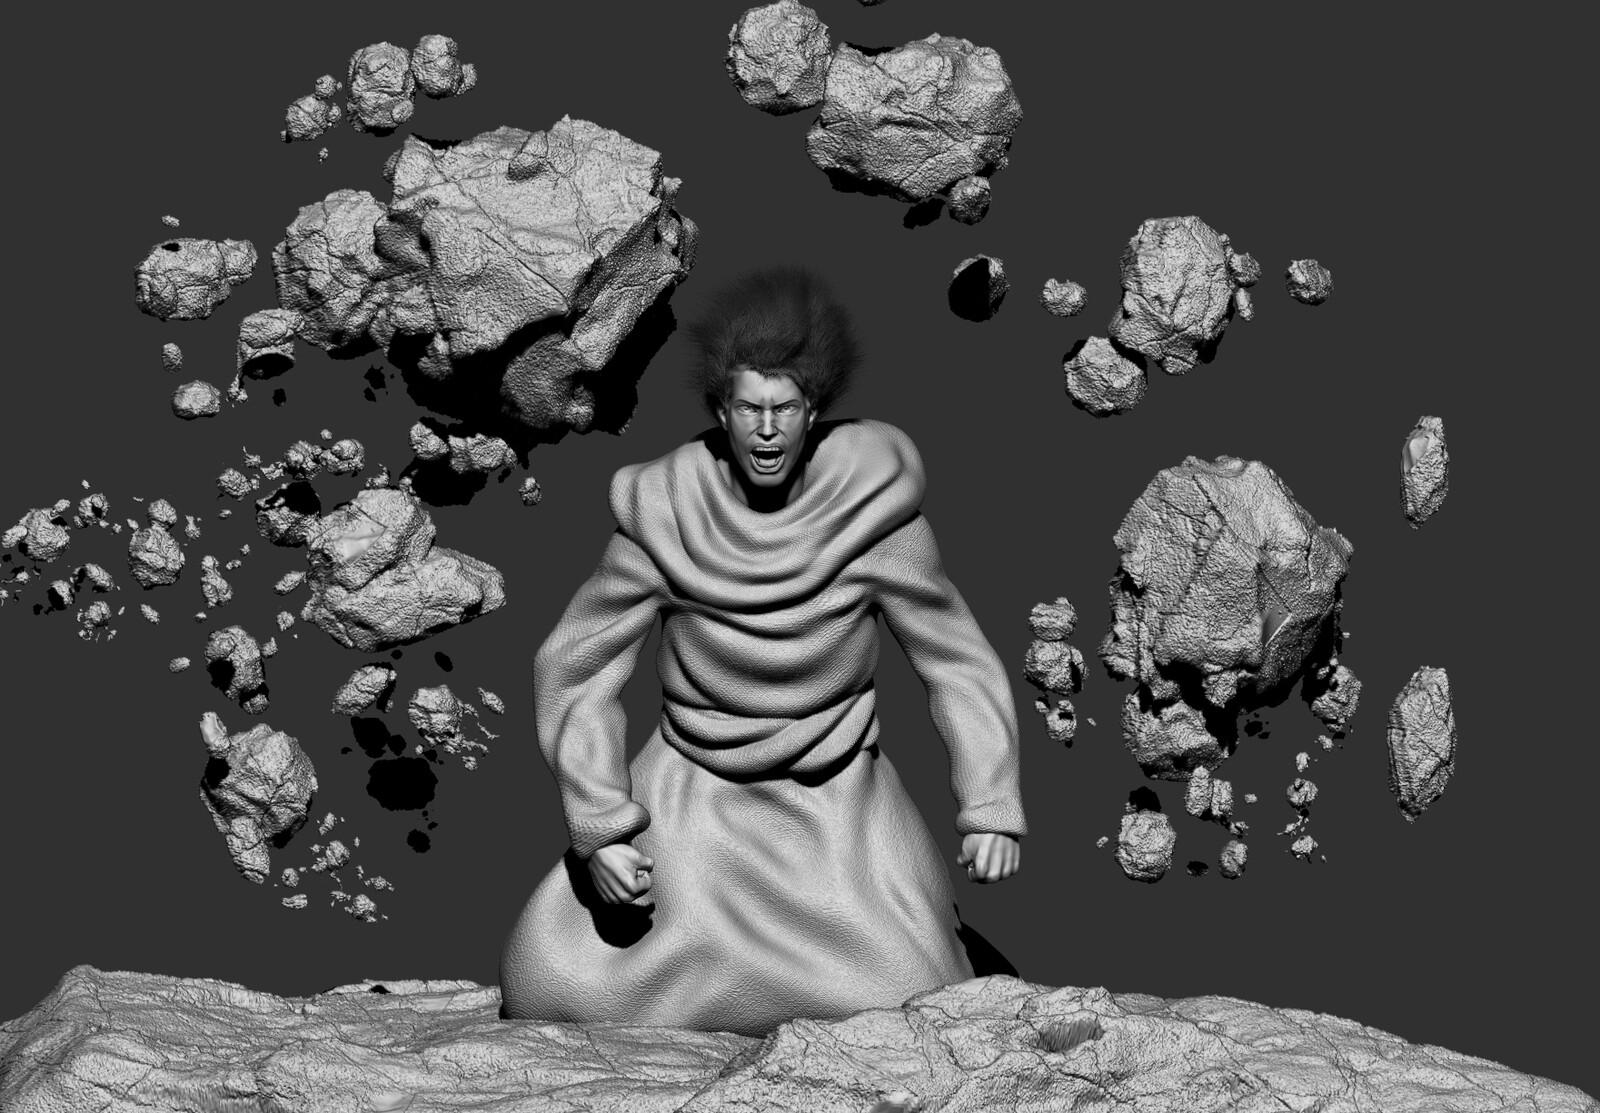 Zbrush 3D model of Kalian in the last scene.